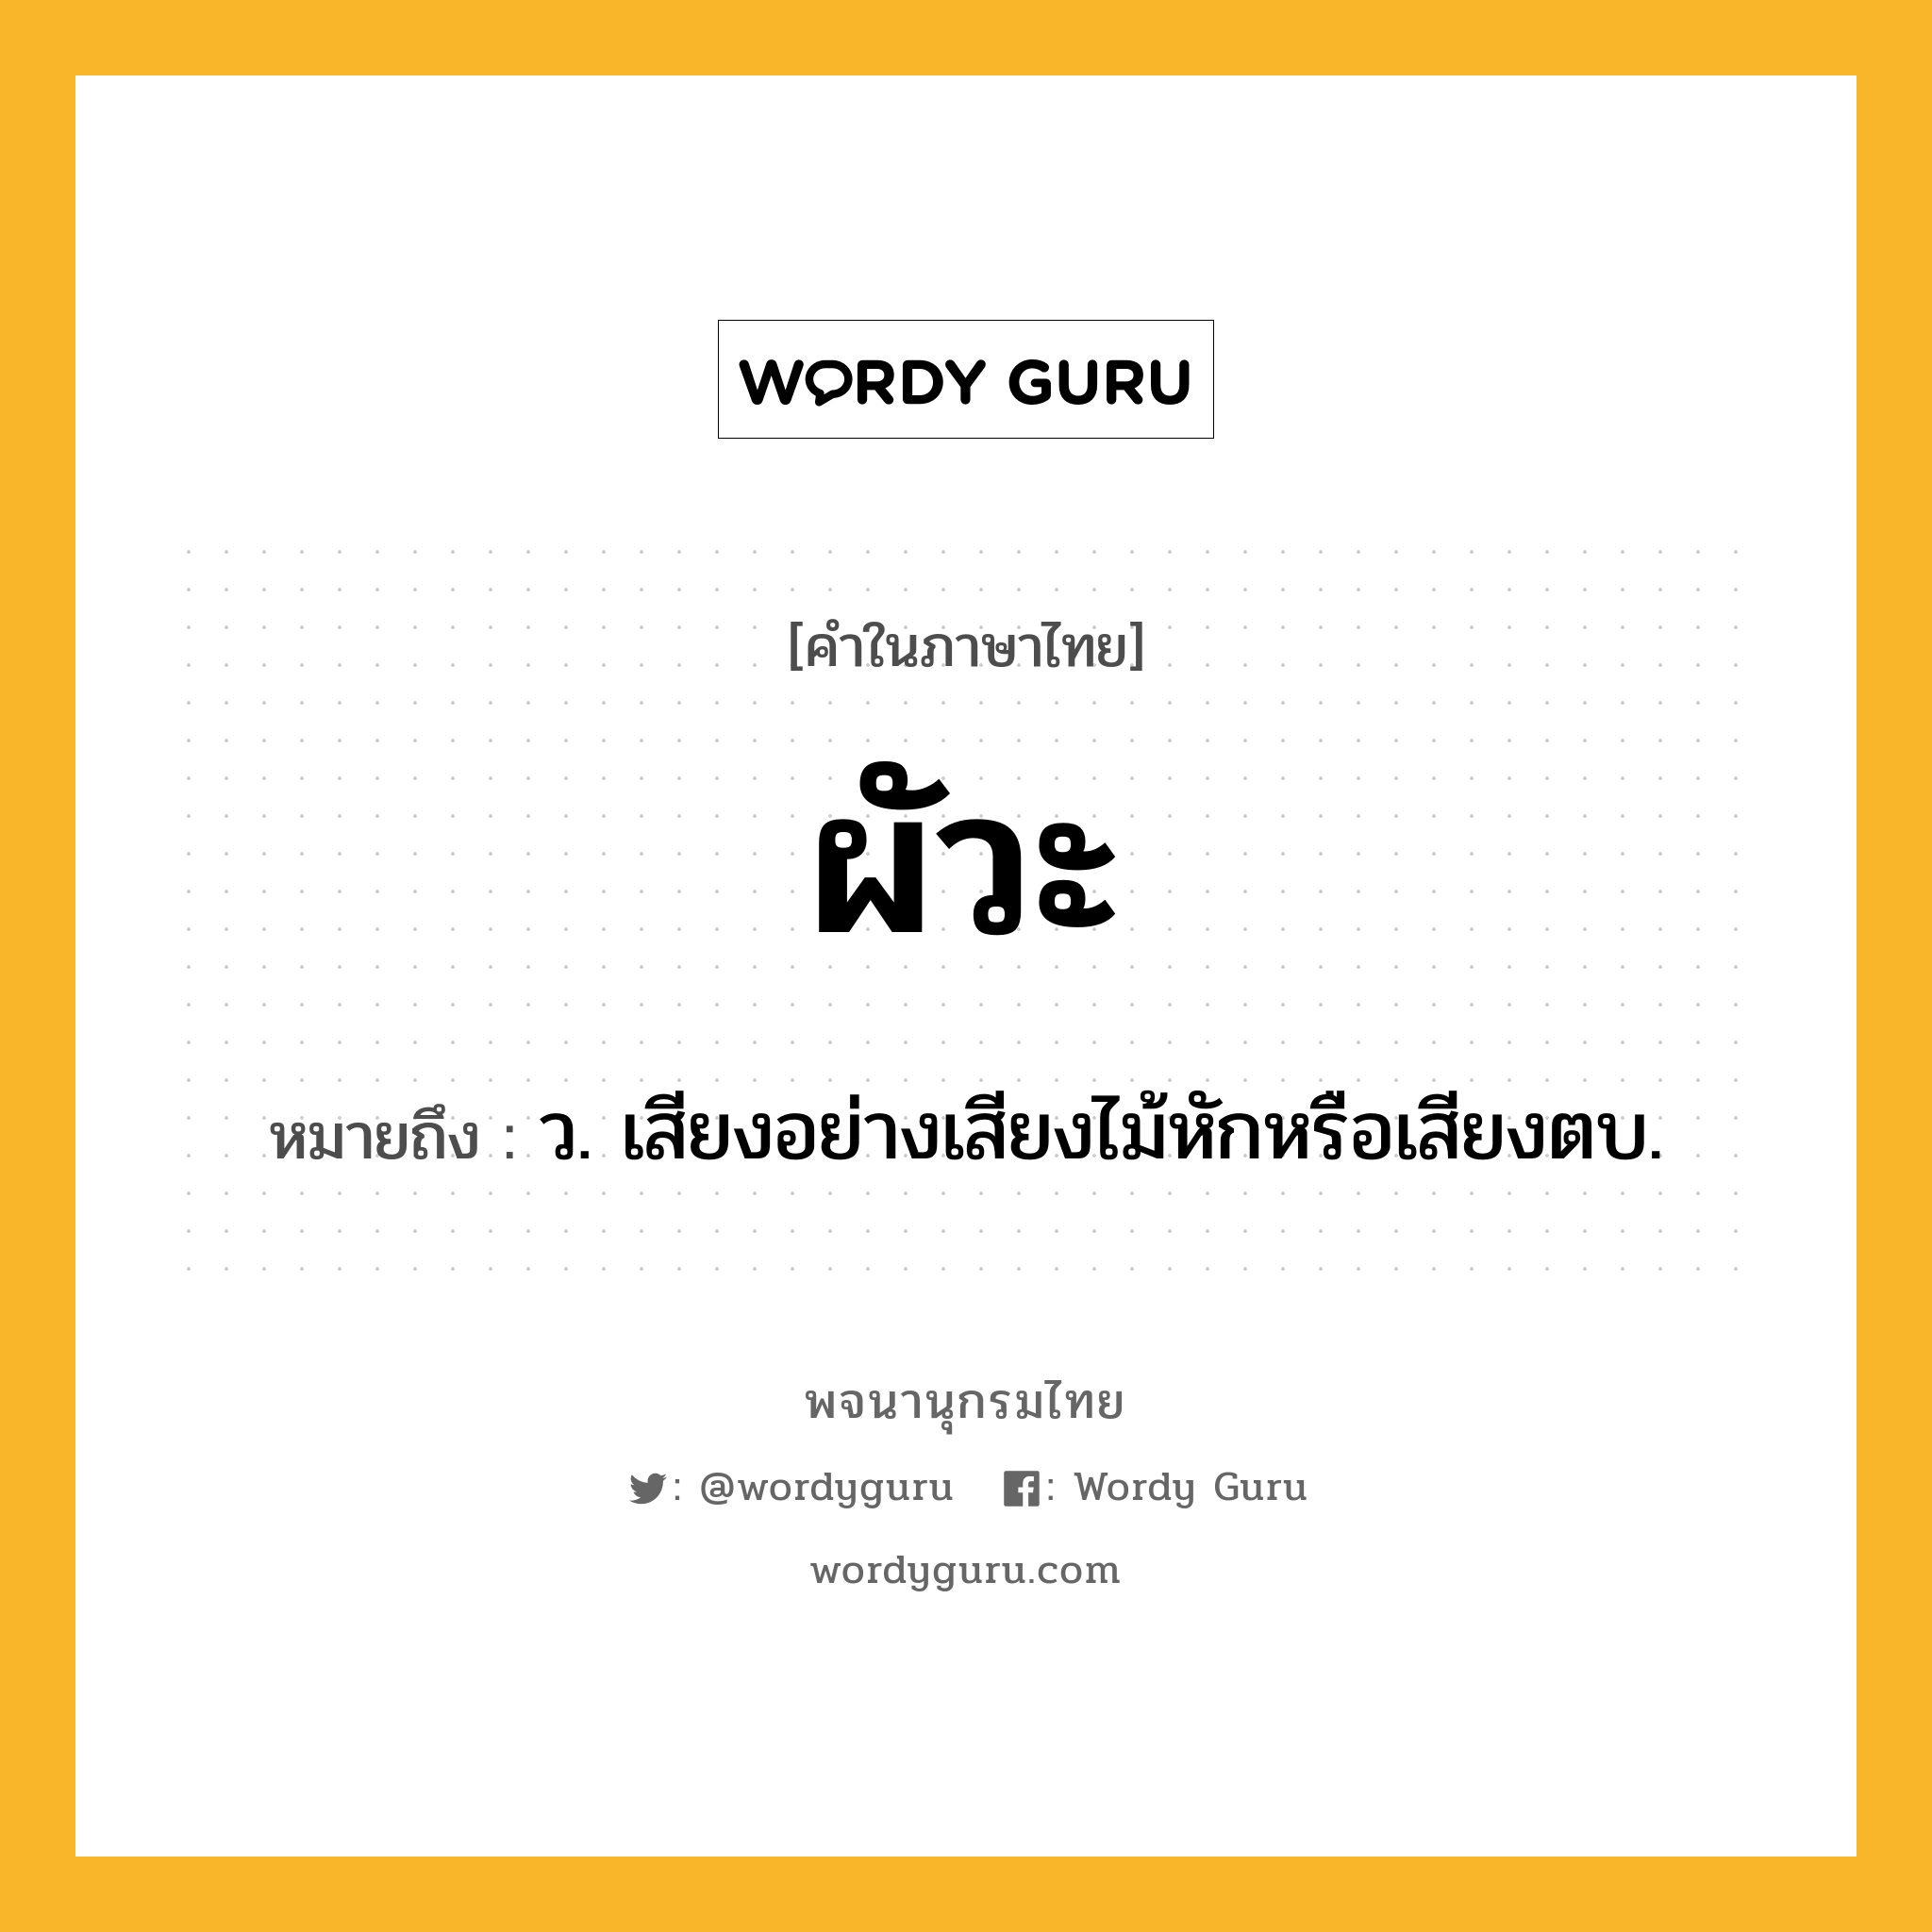 ผัวะ หมายถึงอะไร?, คำในภาษาไทย ผัวะ หมายถึง ว. เสียงอย่างเสียงไม้หักหรือเสียงตบ.